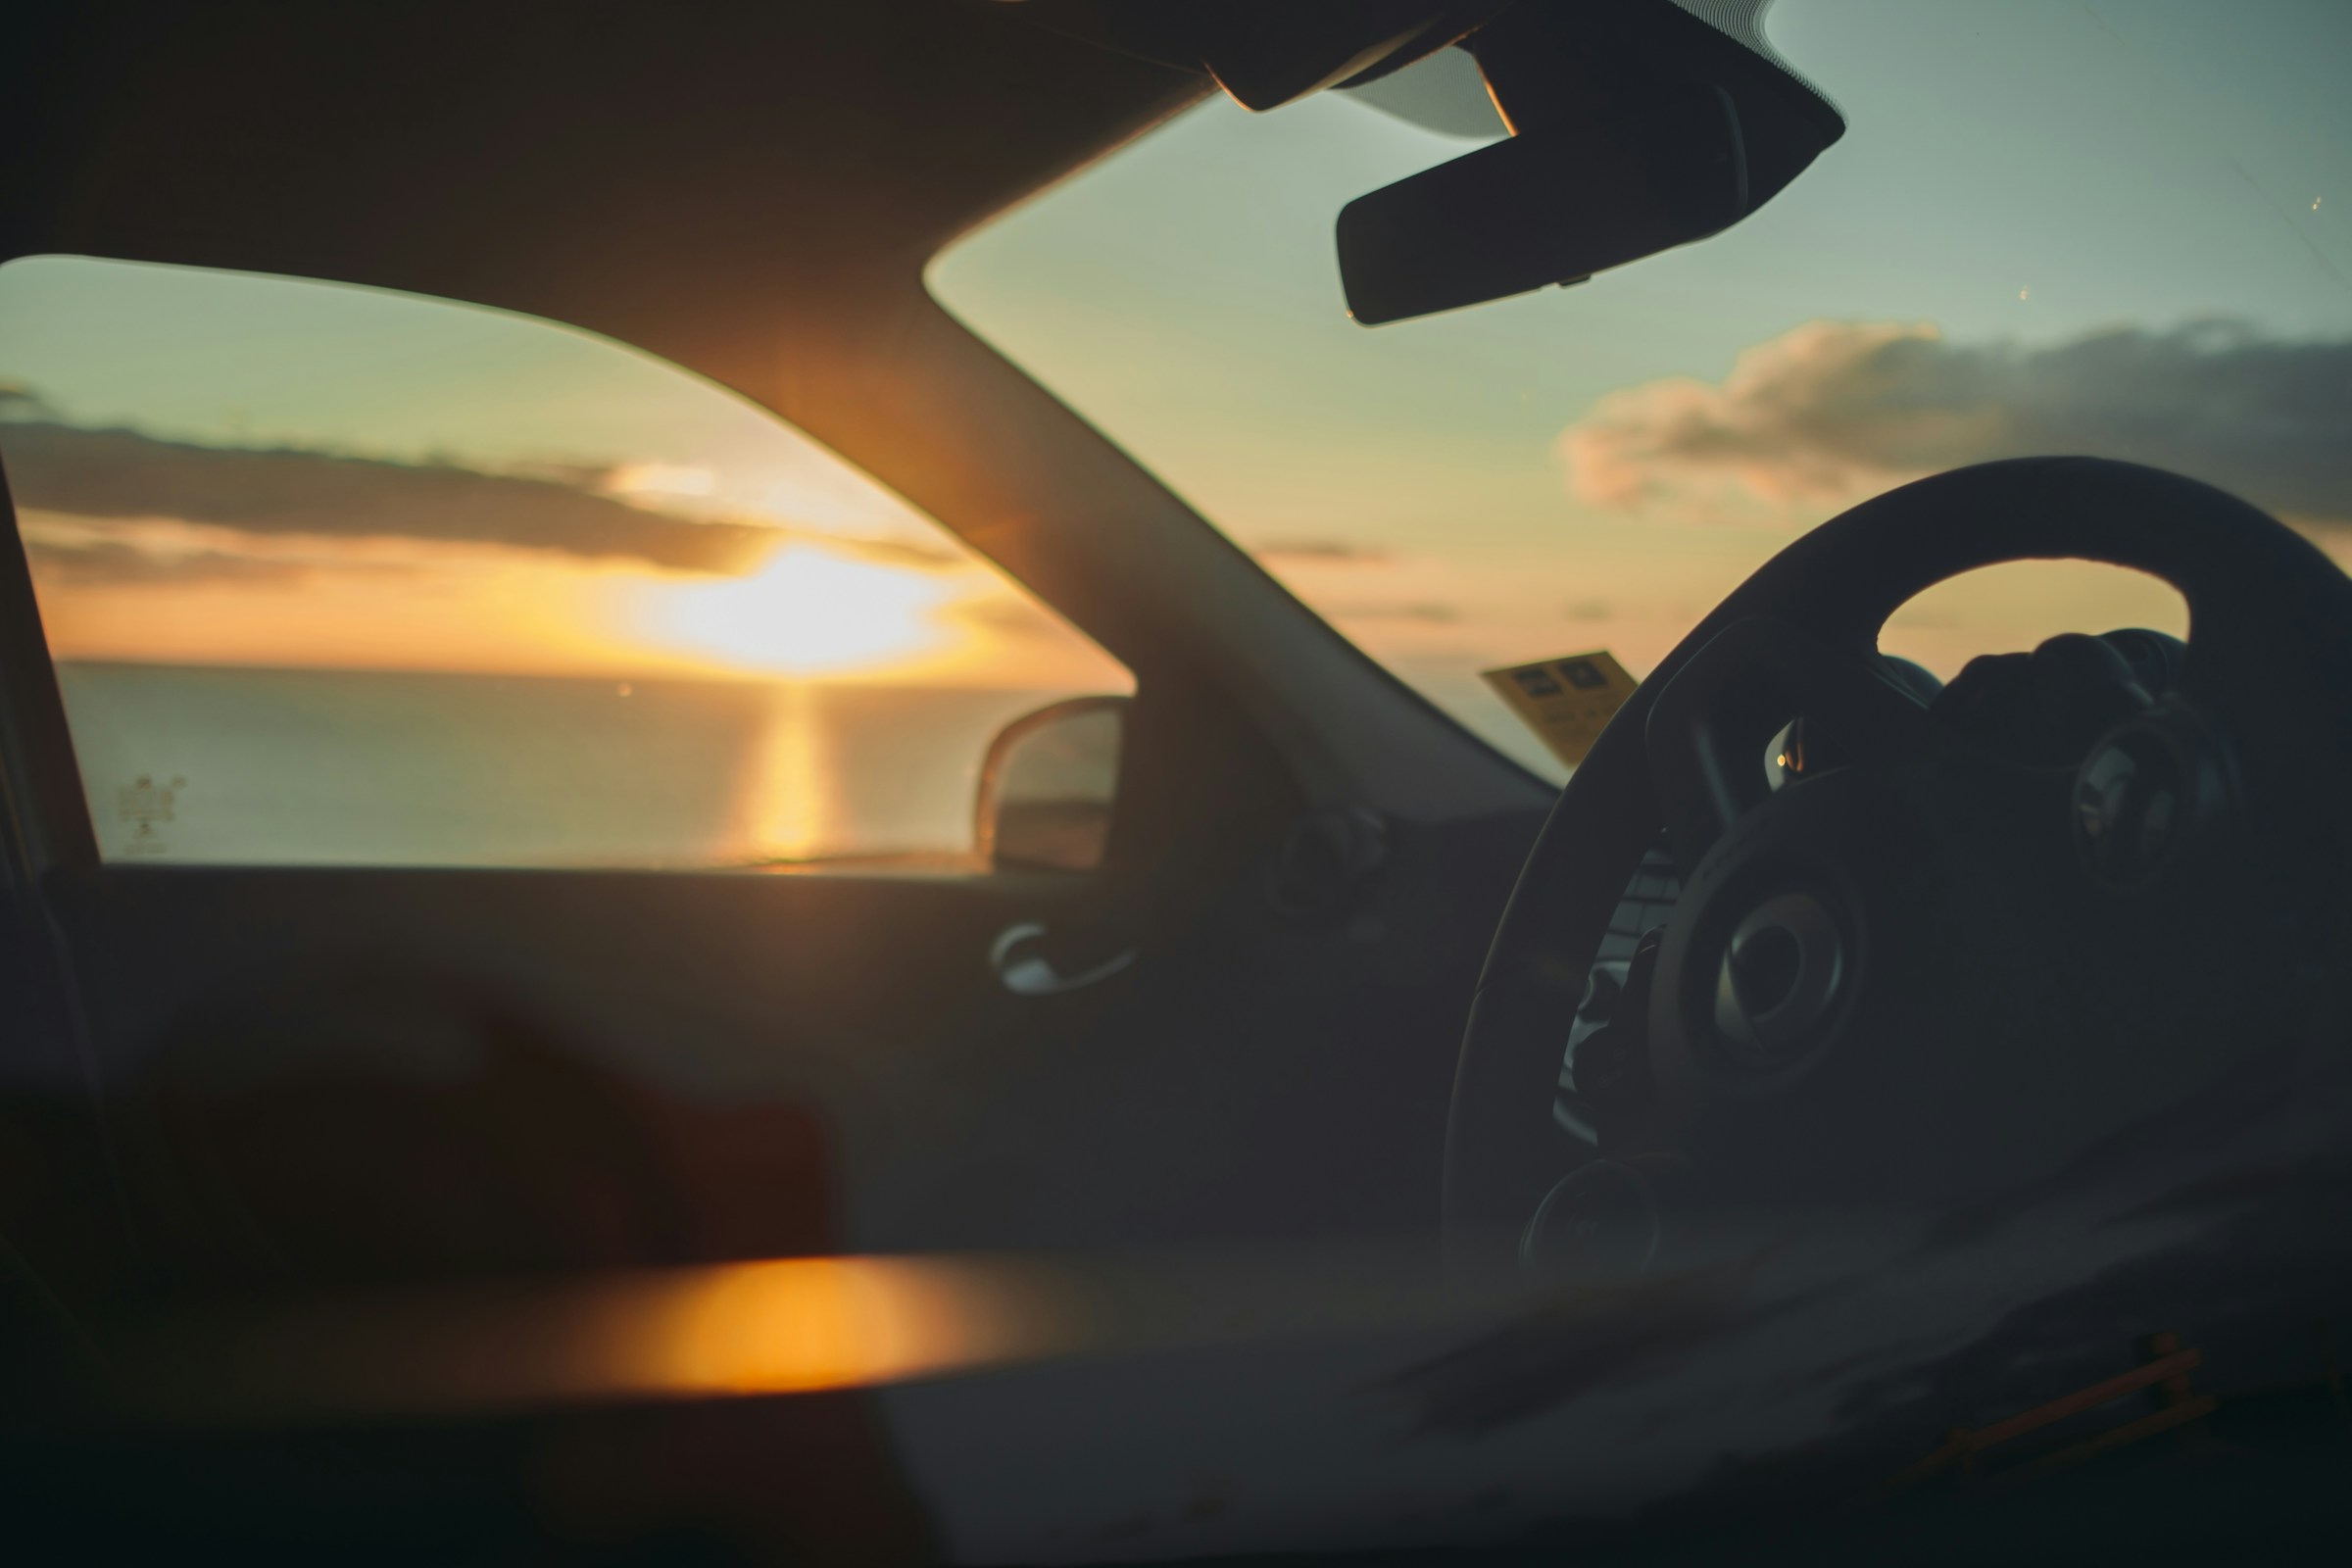 Un coucher de soleil à travers la vitre d'une voiture | Source : Unsplash